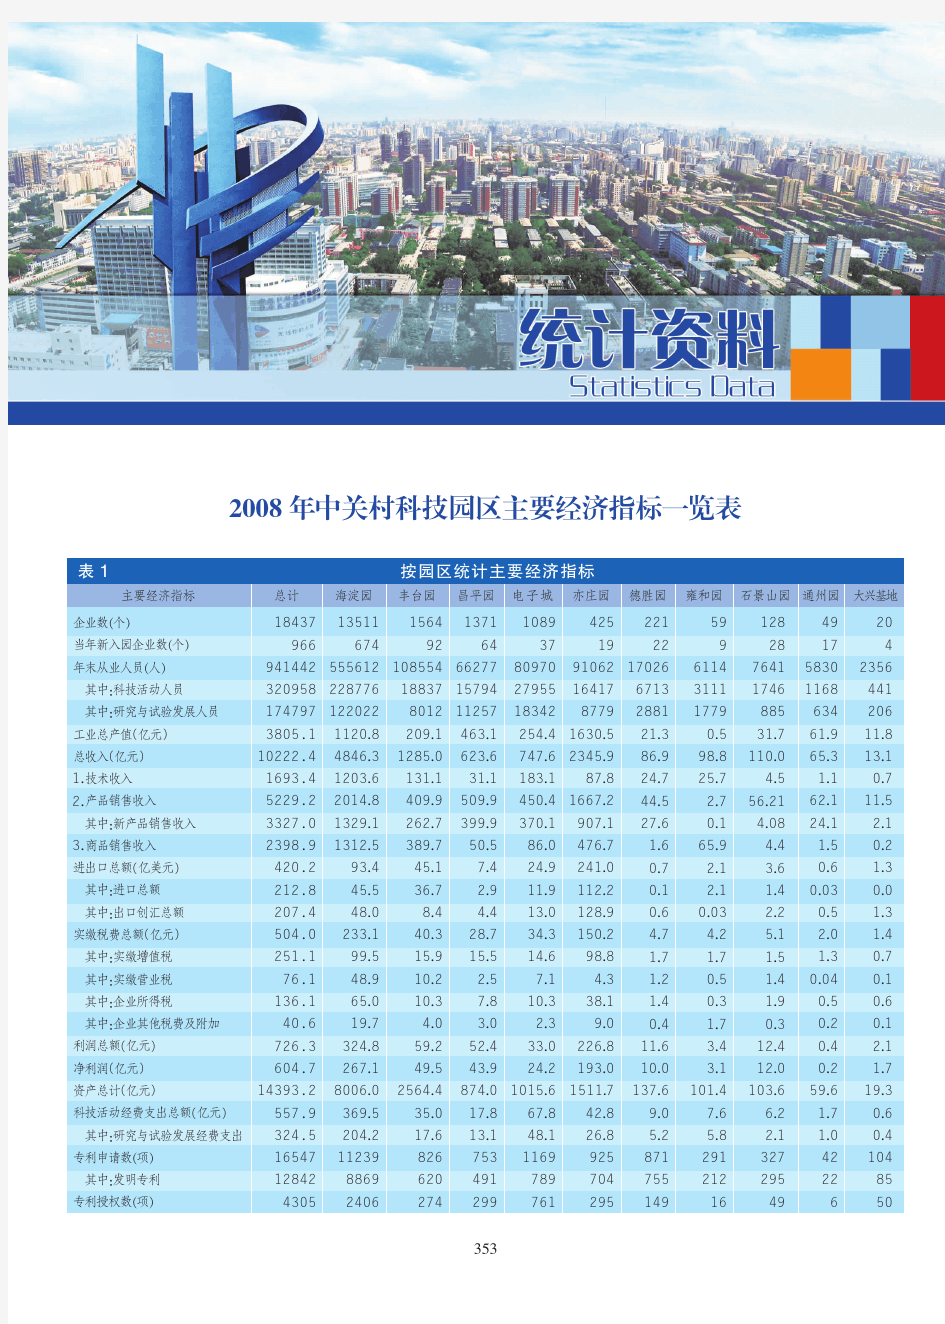 2008年中关村科技园区主要经济指标一览表